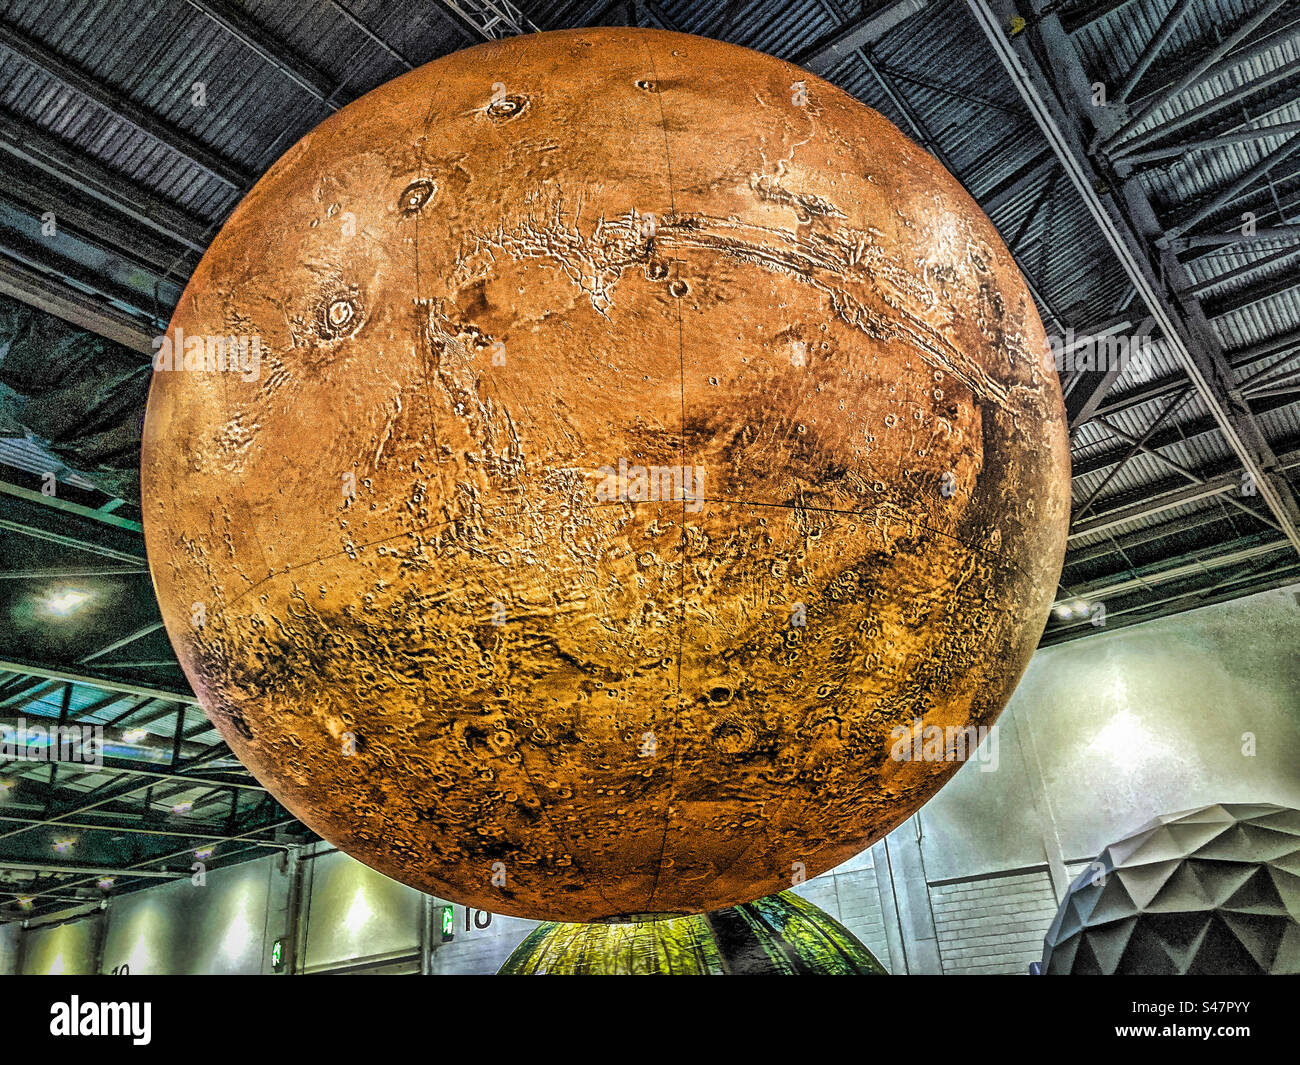 Un grand modèle gonflable de la planète Mars Banque D'Images